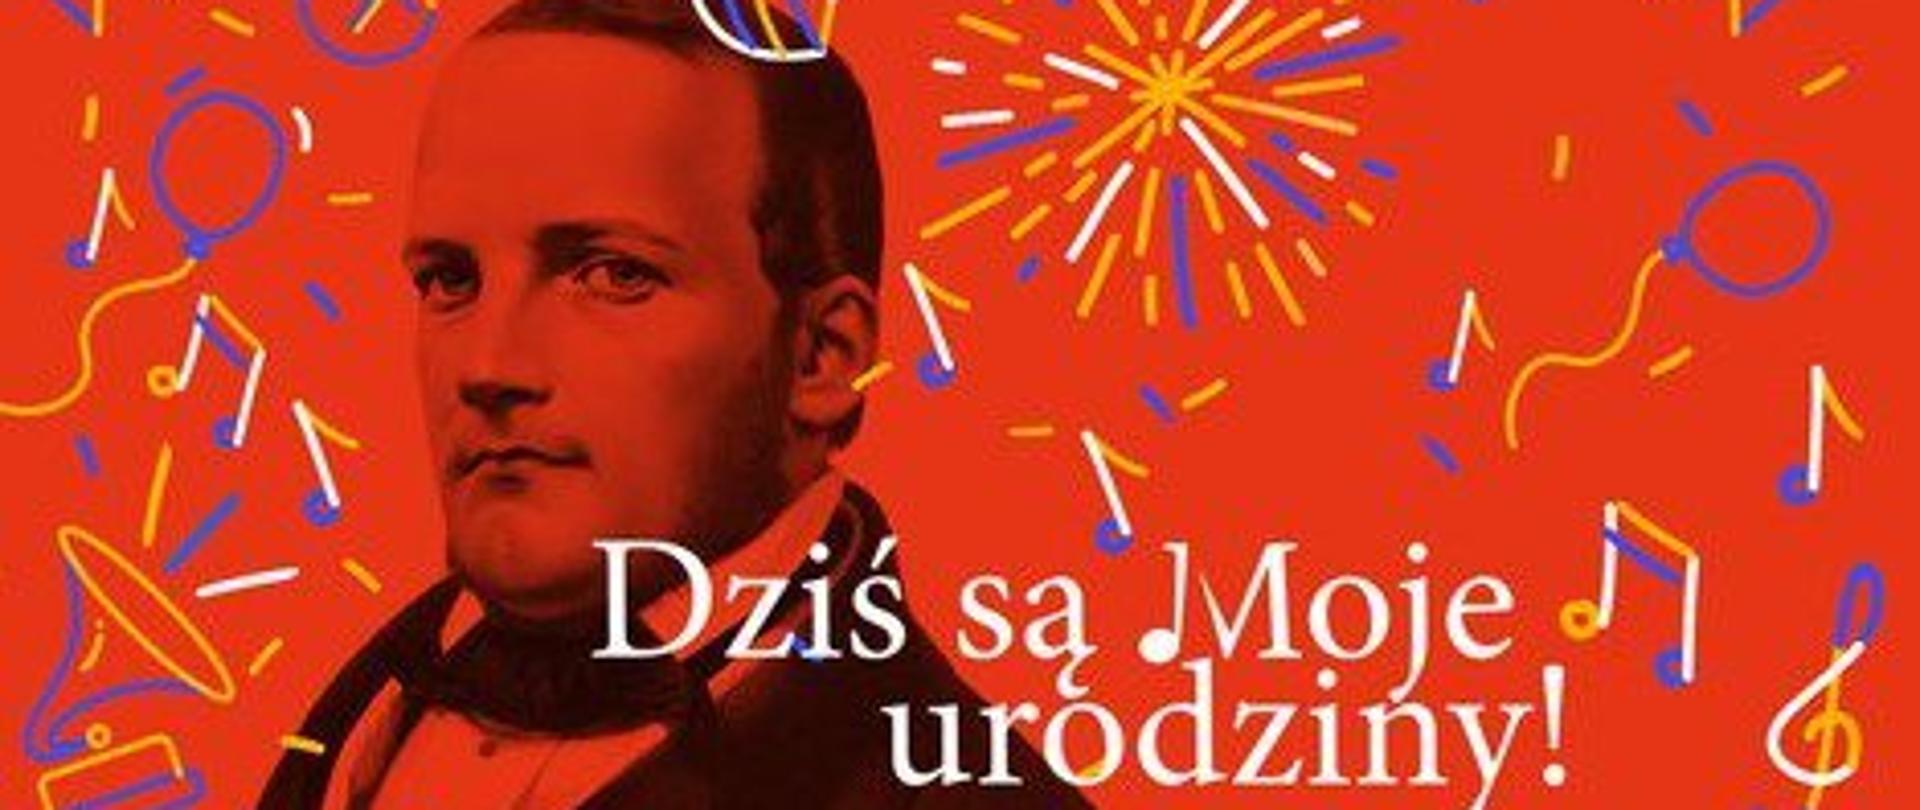 5 maja świętujemy 200. urodziny Stanisława Moniuszki
